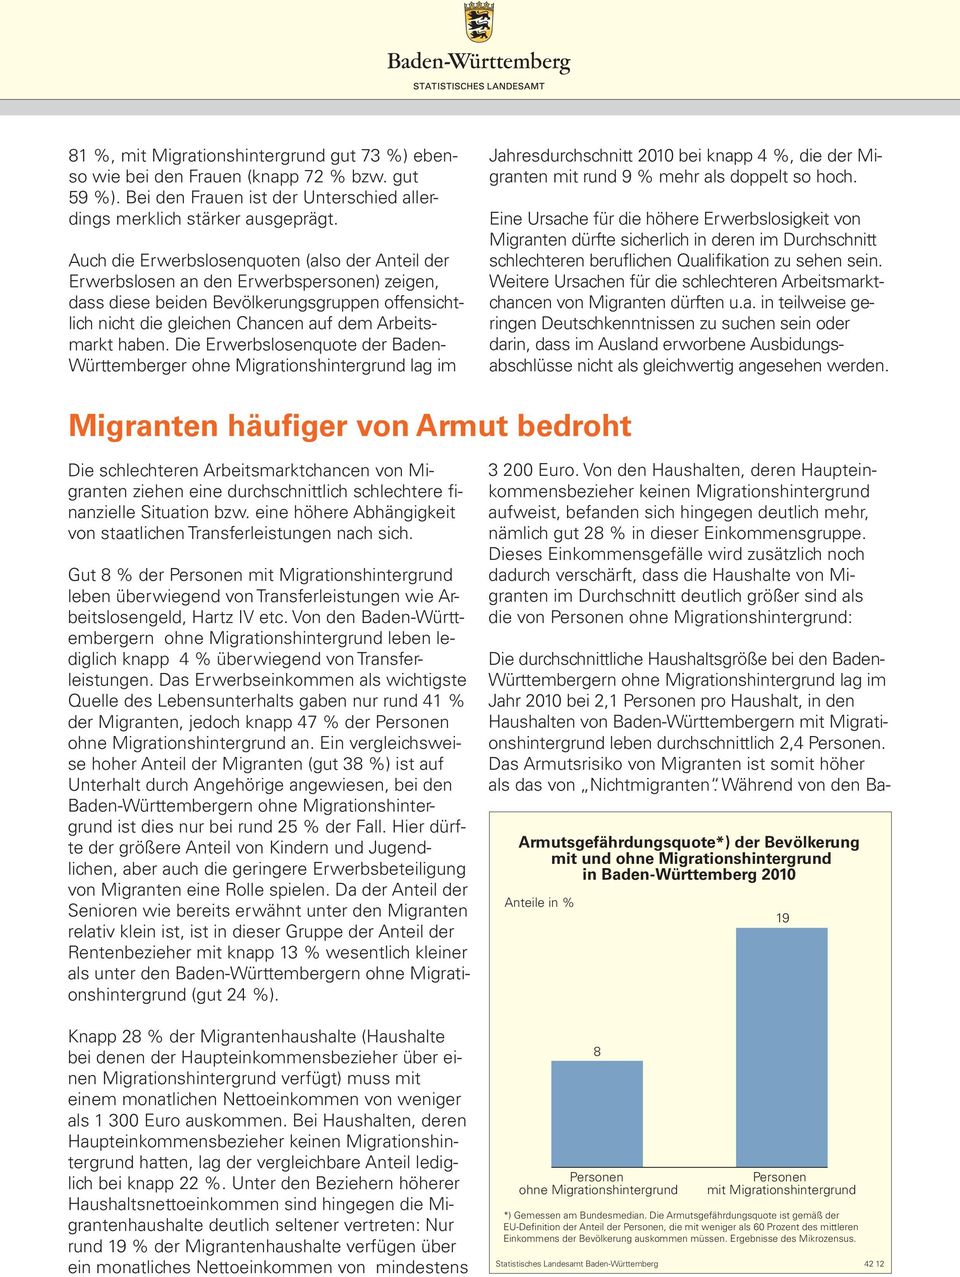 haben. Die Erwerbslosenquote der Baden- Württemberger ohne Migrationshintergrund lag im Jahresdurchschnitt 2010 bei knapp 4 %, die der Migranten mit rund 9 % mehr als doppelt so hoch.